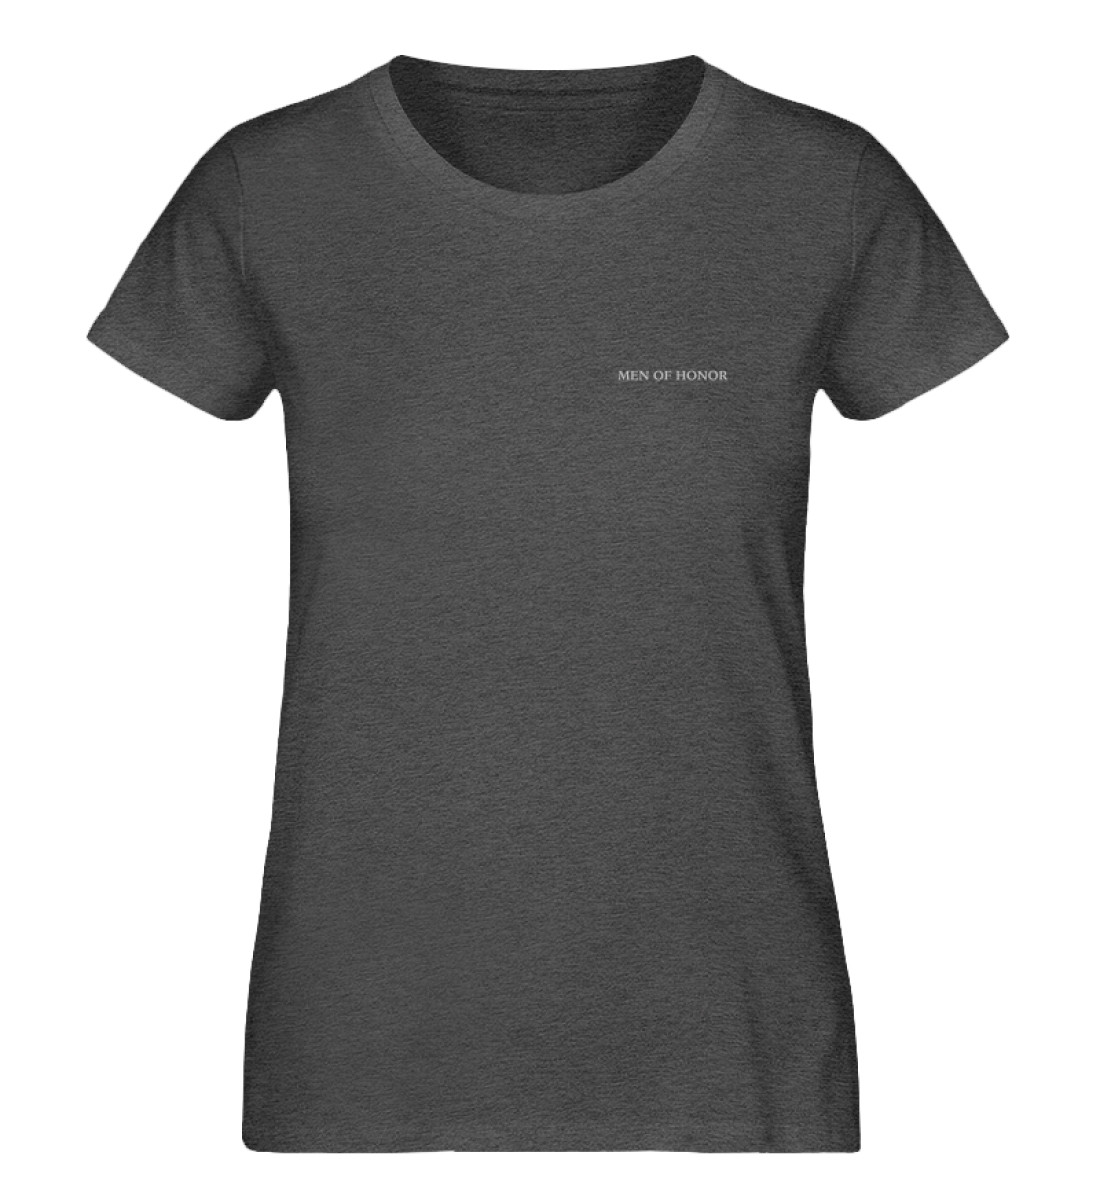 MOH T-Shirt F Dark Heather Grey FMOHBCIRLGR - Damen Premium Organic Shirt-6898